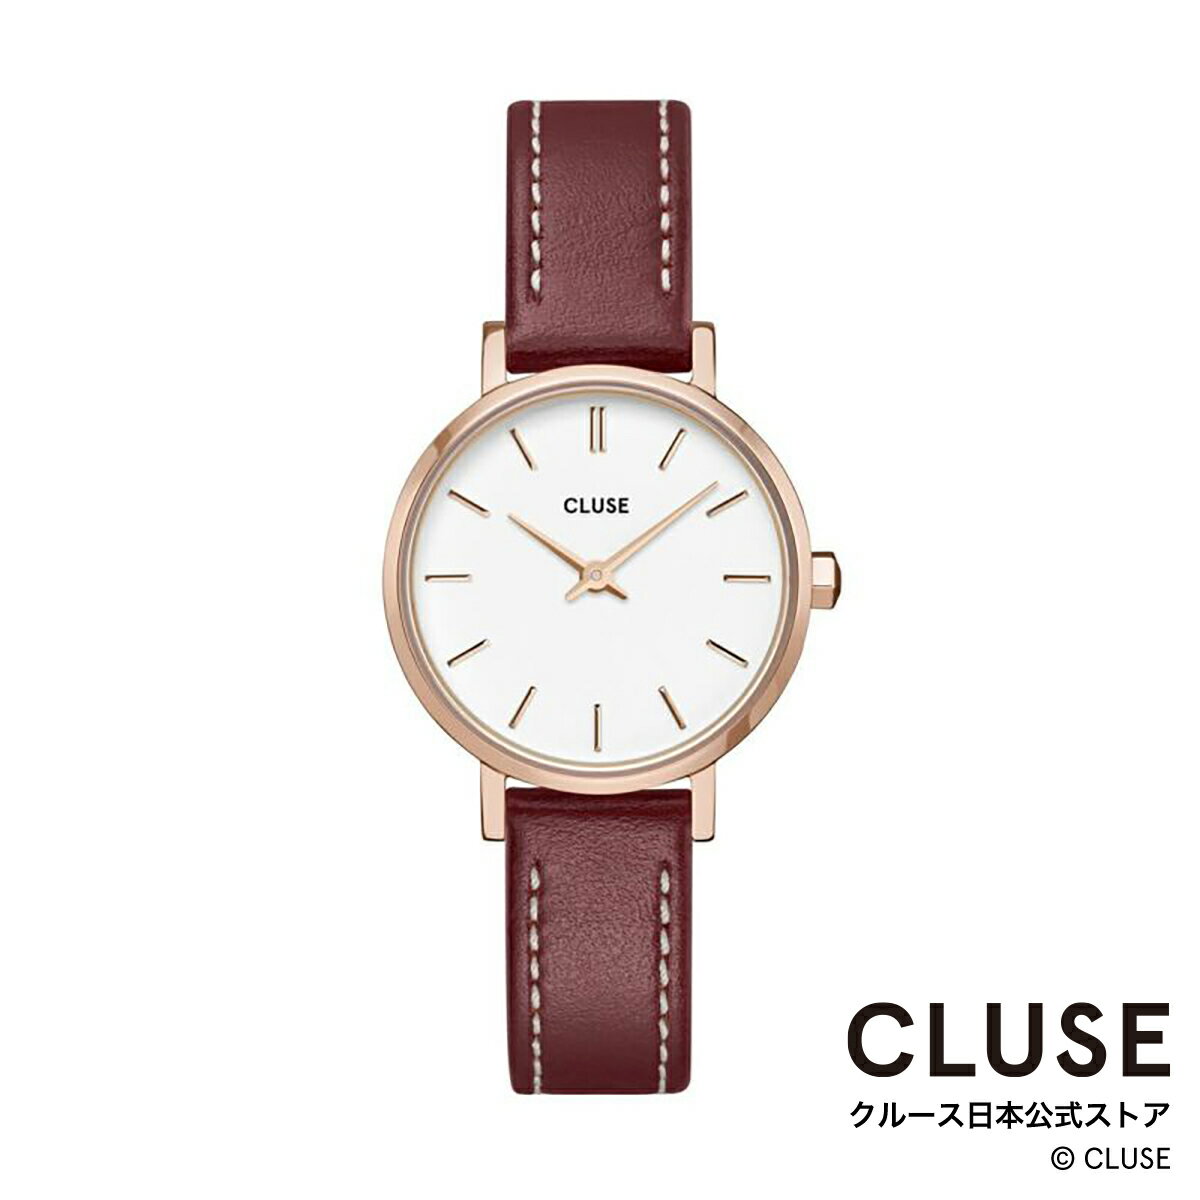 クルース 腕時計 レディース（就活向き） クルース CLUSE 日本公式ストア ボーホーシック ペティット レザー ローズゴールド ホワイト ダークレッド レディース 女性 腕時計 時計 防水 クォーツ